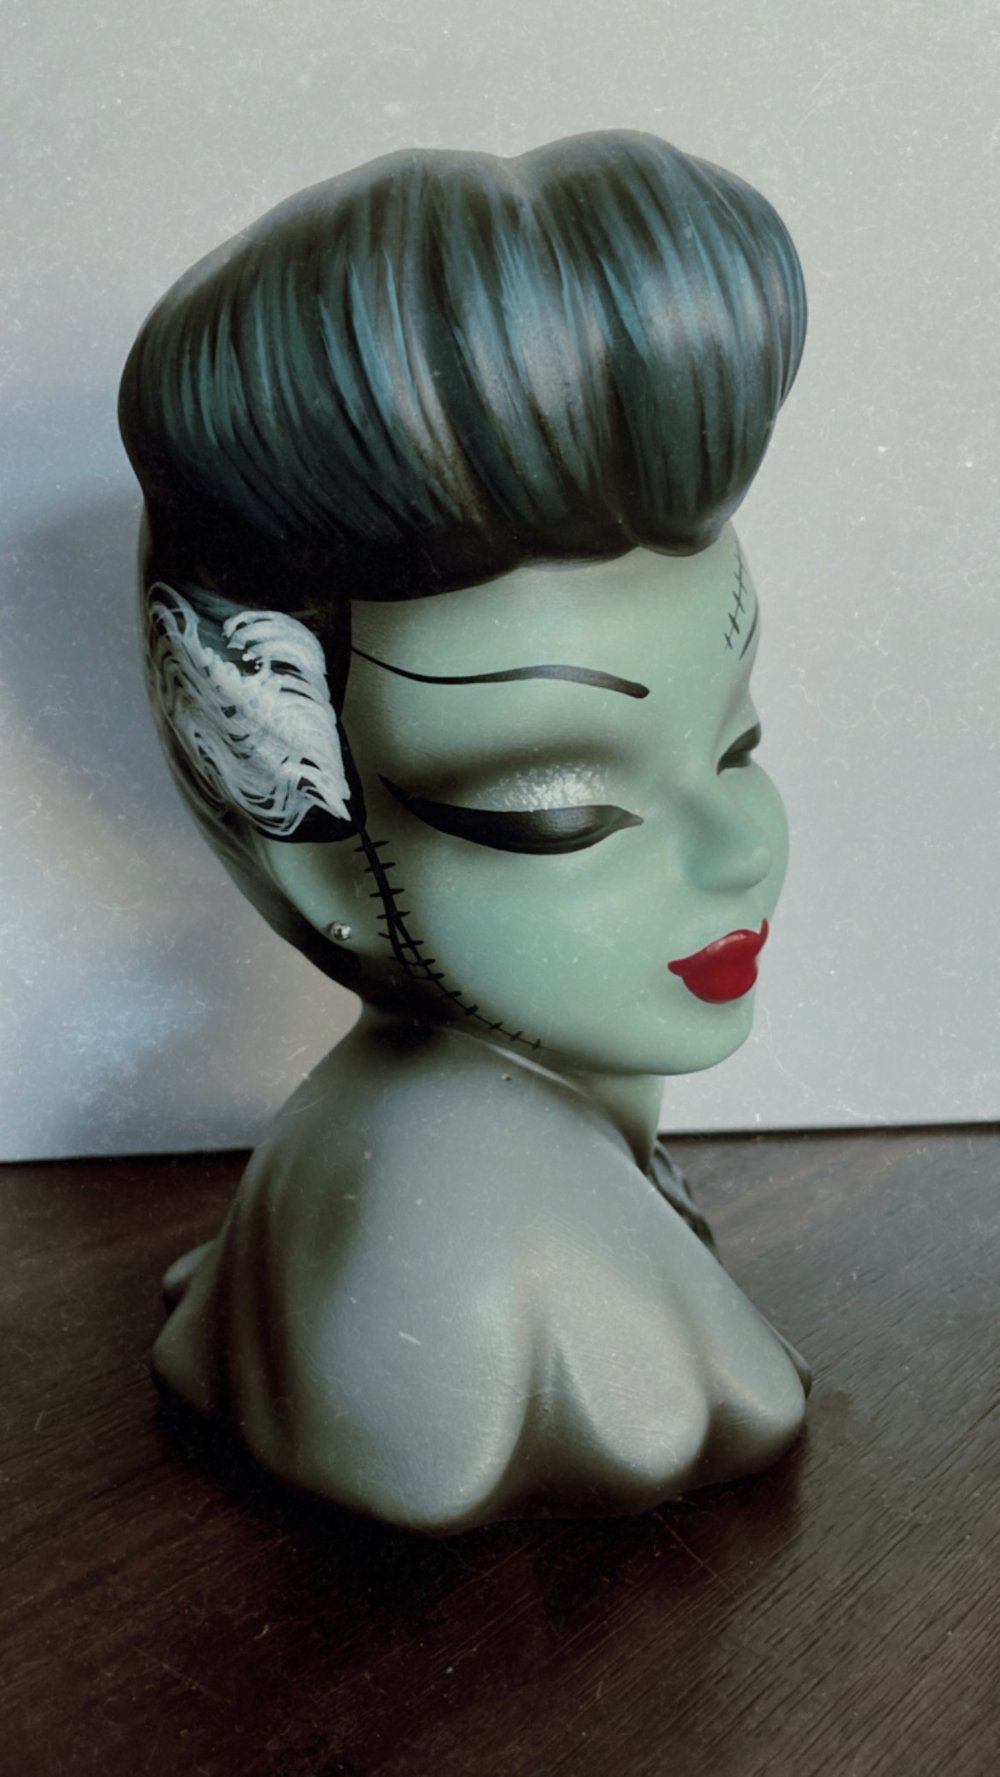 Vintage Revamped Bride of Frankenstein Head Vase